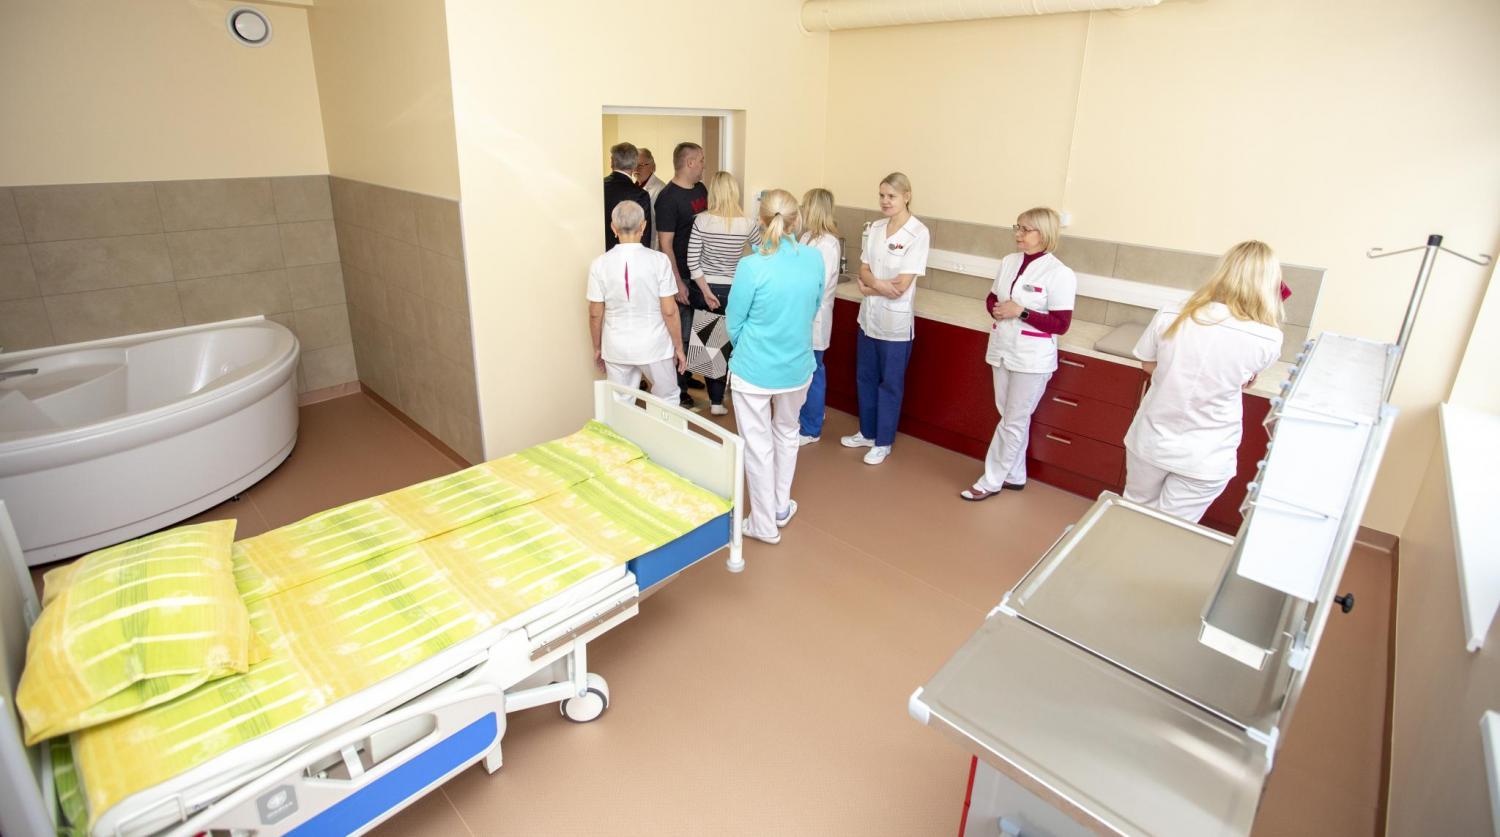 Hetk möödunud kuu lõpus toimunud Lõuna-Eesti haigla täielikult renoveeritud sünnitus- ja günekoloogia osakonna avamiselt. Kõik osakonna ruumid said renoveerimise käigus uue planeeringu ning palatid muudeti patsiendisõbralikumaks. Foto: AIGAR NAGEL